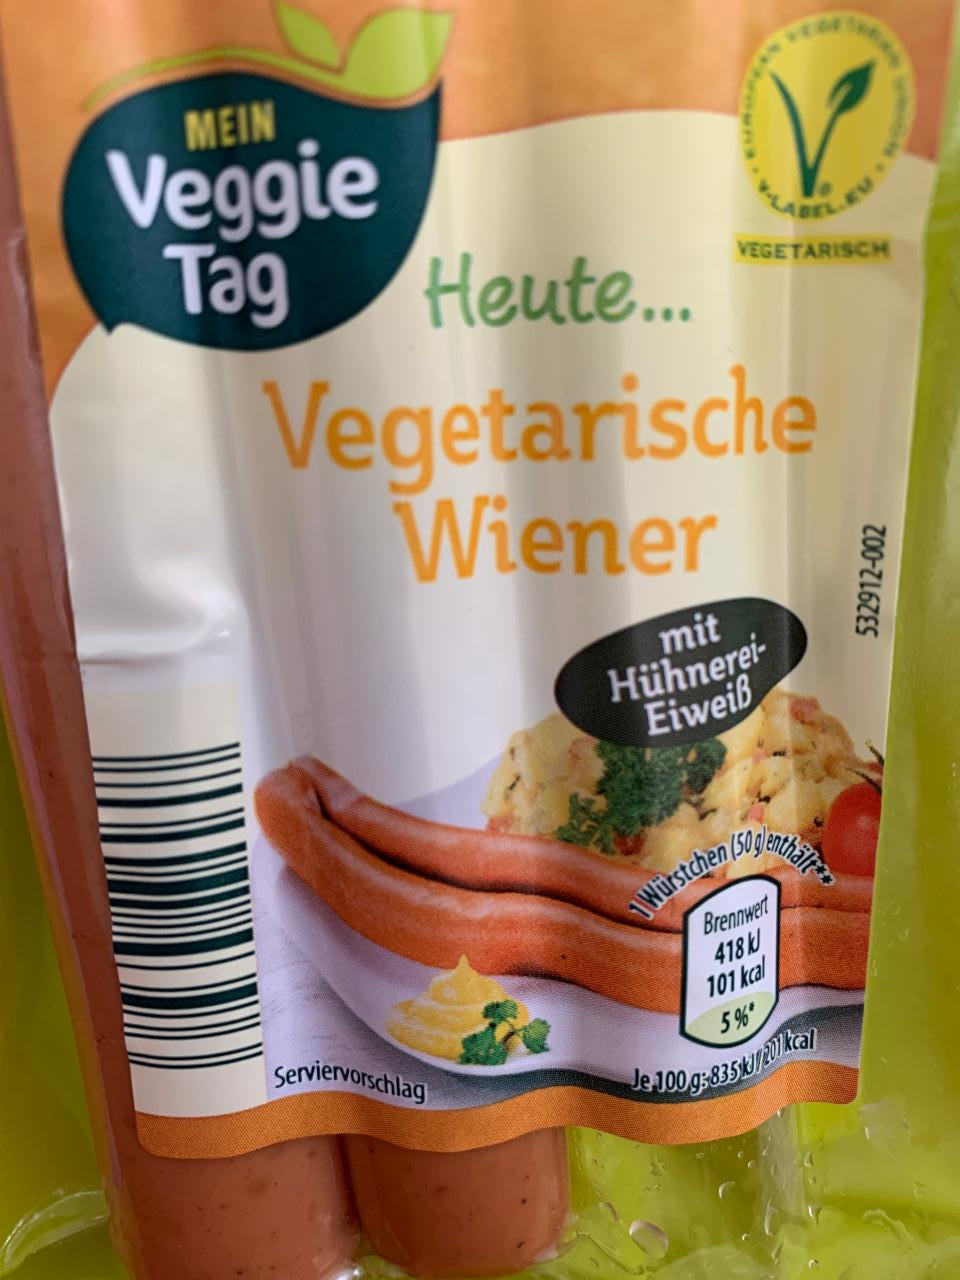 Fotografie - mein Veggie Tag vegetarische Wiener